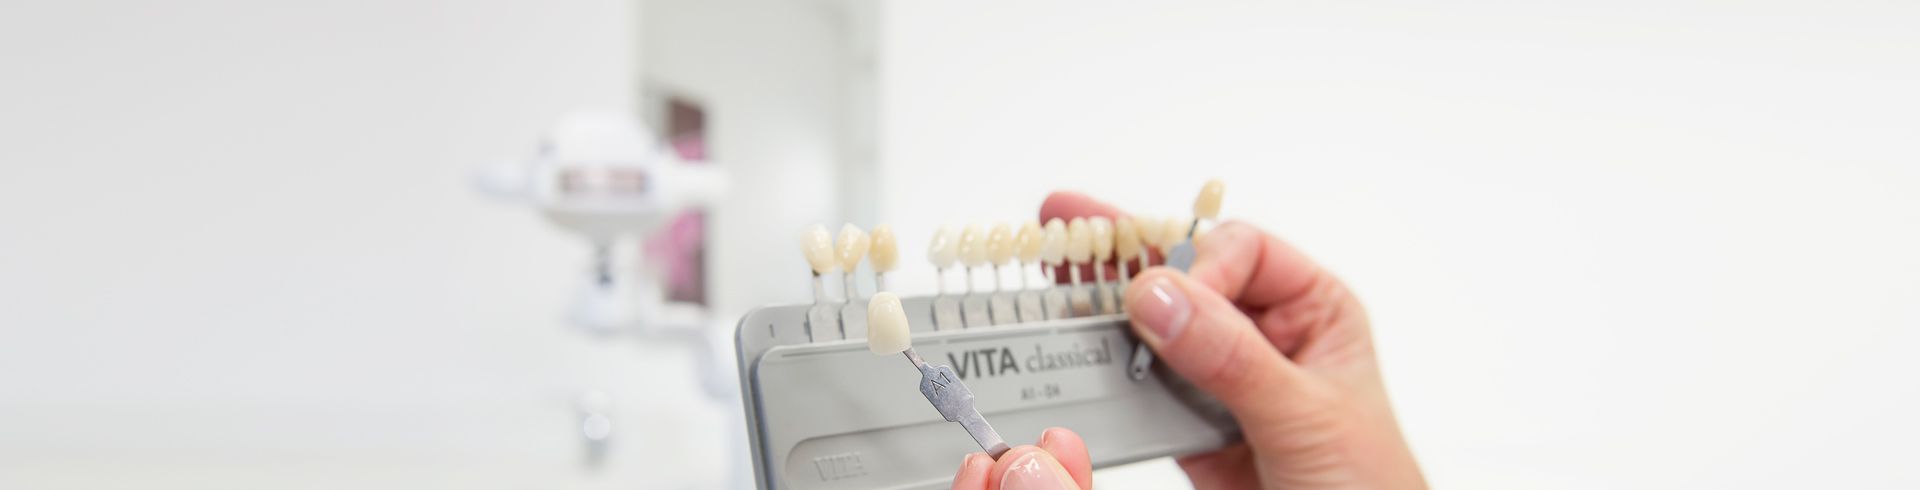 Praxis für Zahnheilkunde & Implantologie Dr. Stobias - Dentallabor